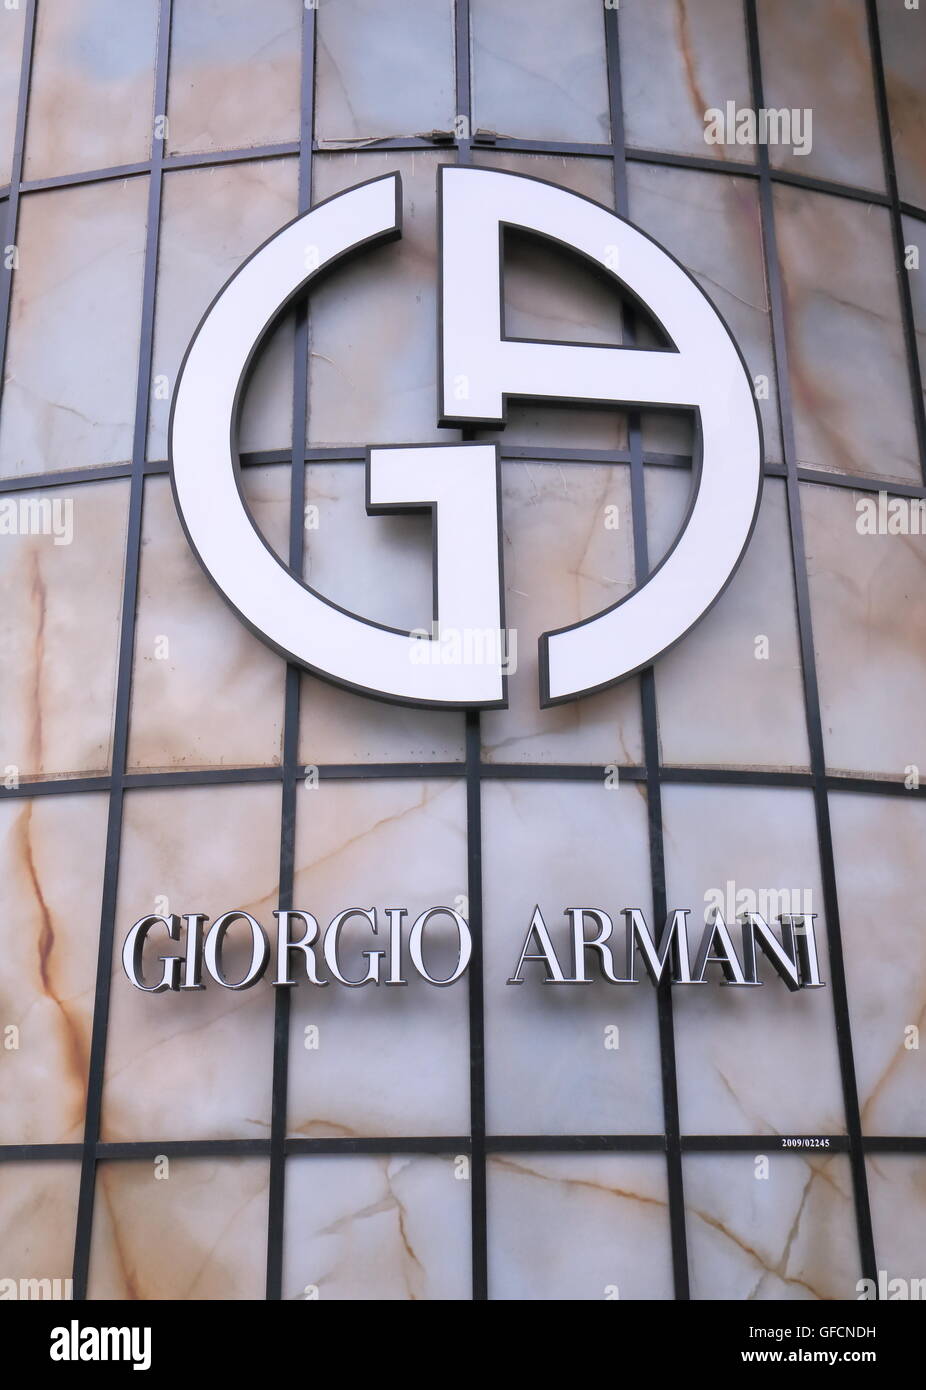 Giorgio Armani company logo, an Italian fashion house founded by Giorgio  Armani in 1975 Stock Photo - Alamy